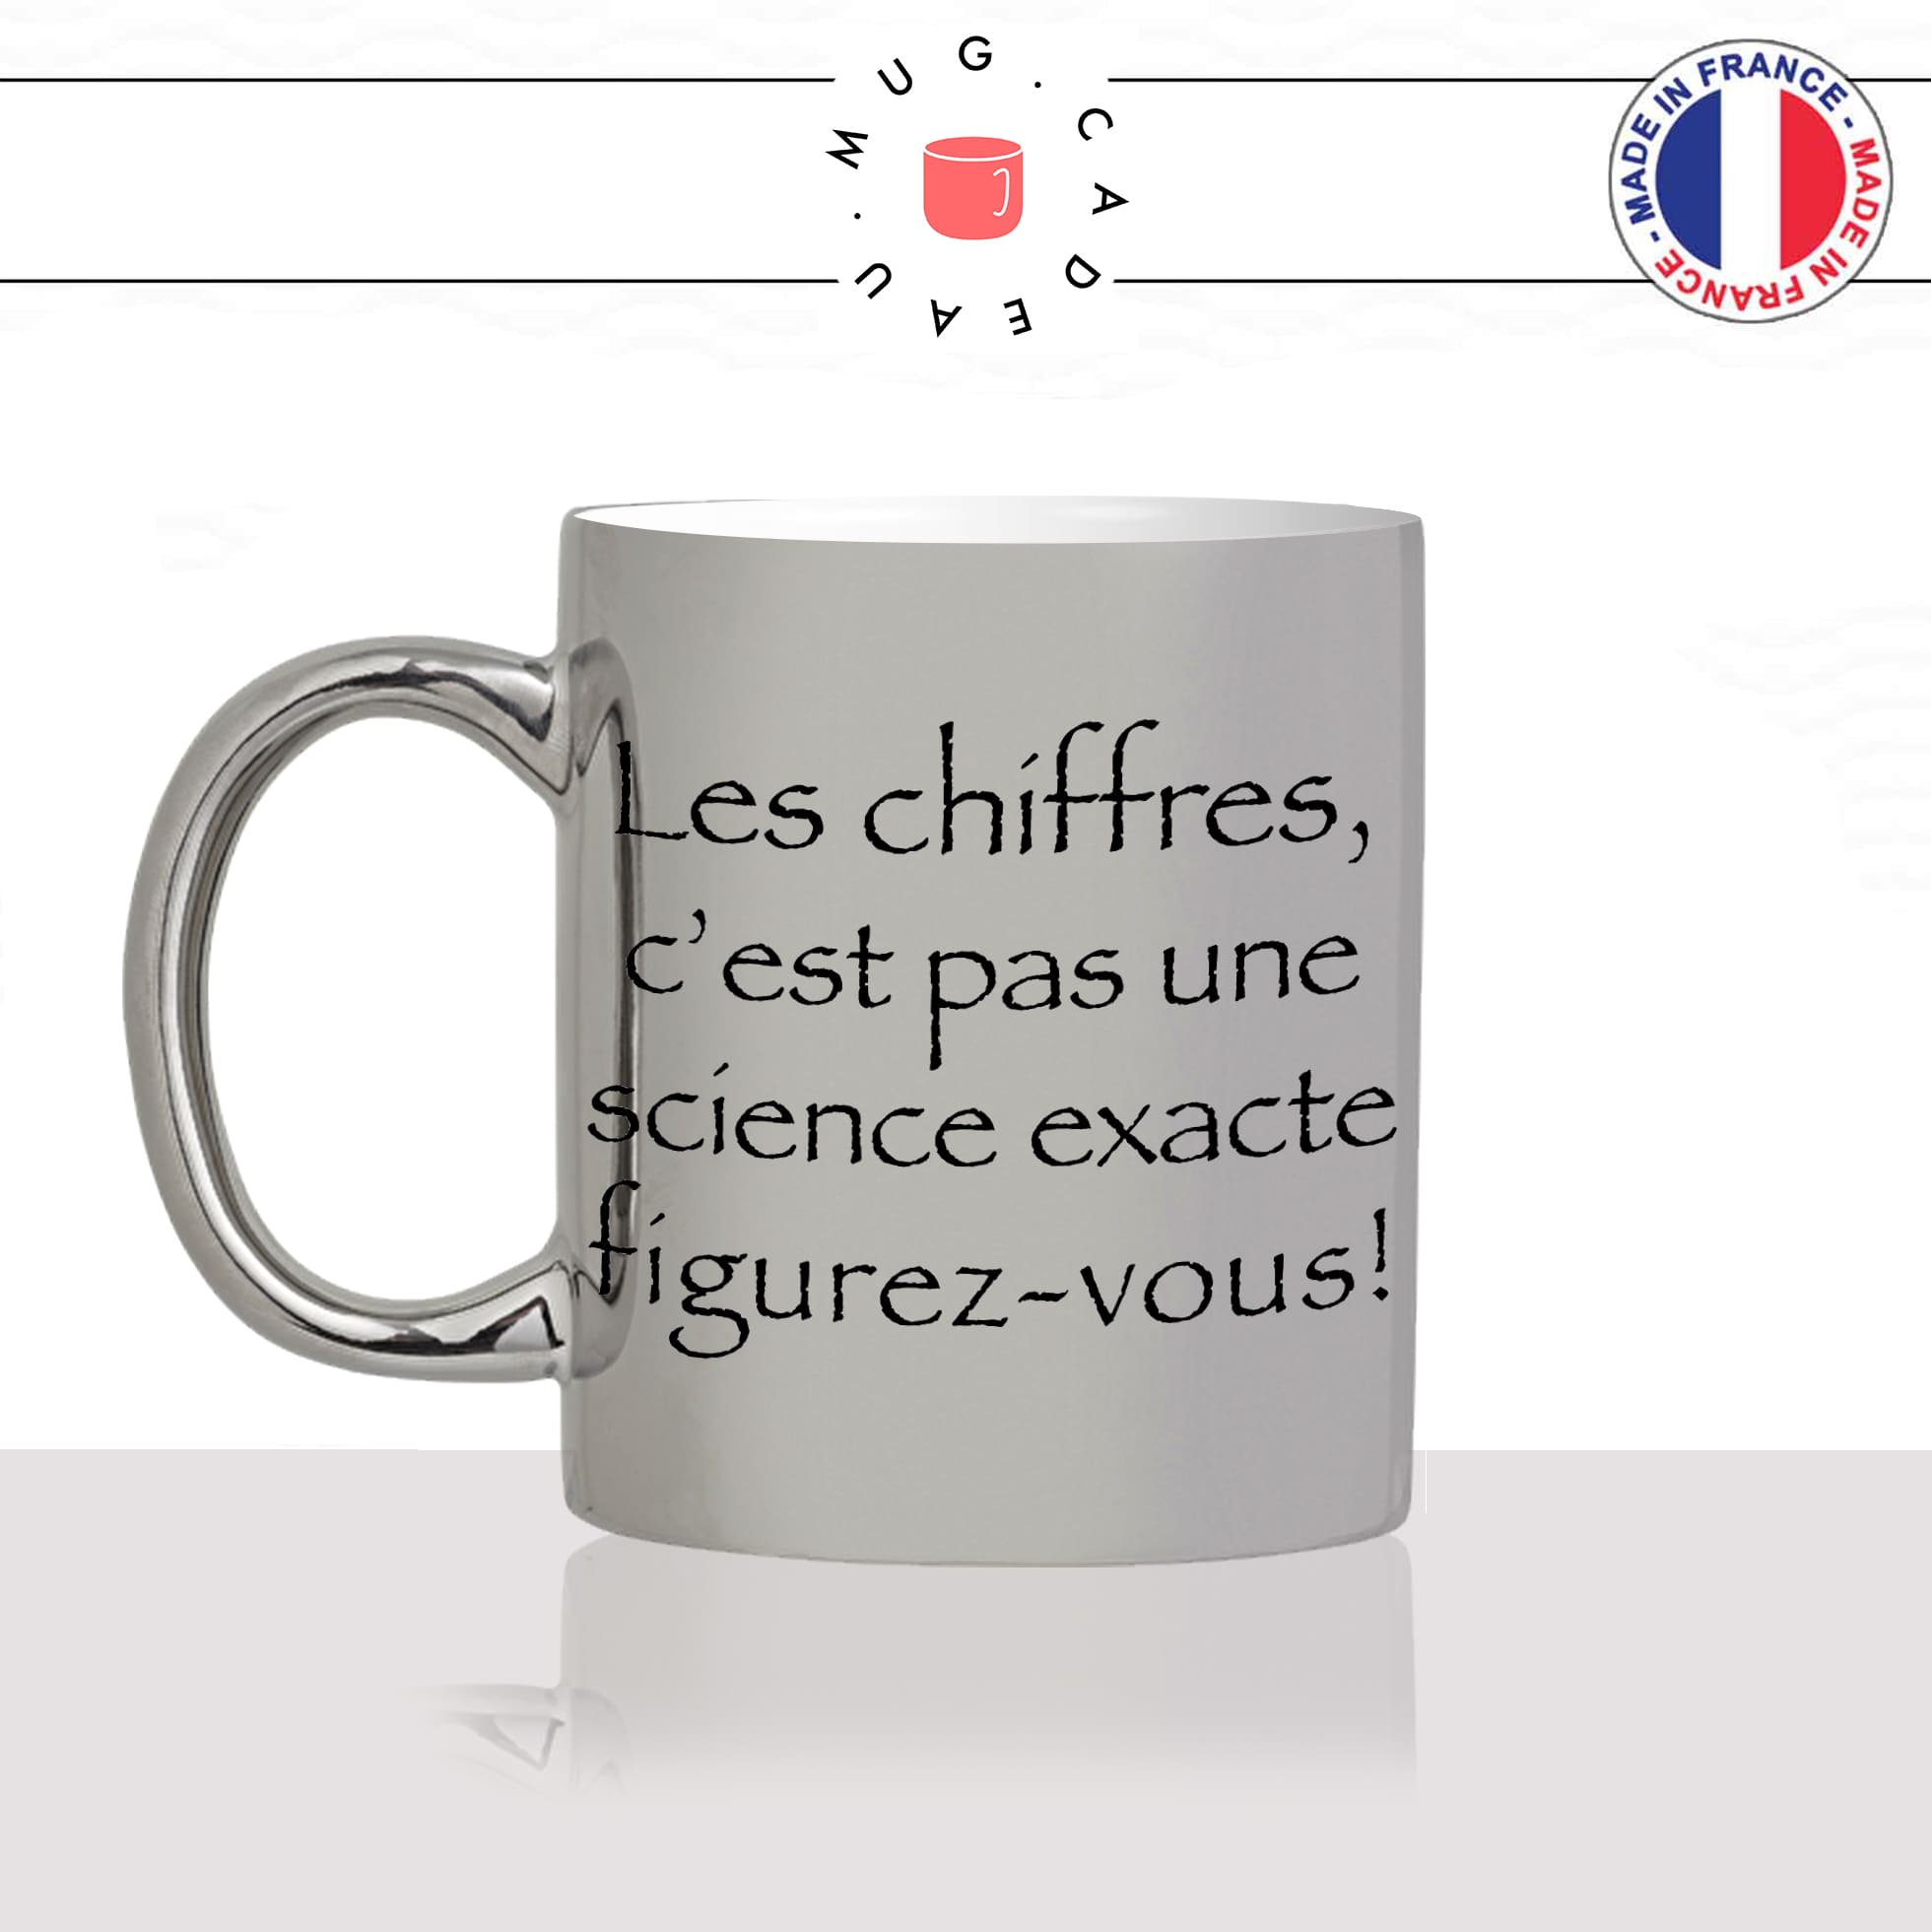 mug-tasse-argent-argenté-silver-série-francaise-culte-kaamelott-arthur-chiffres-science-exacte-caradoc-humour-idée-cadeau-fun-cool-café-thé